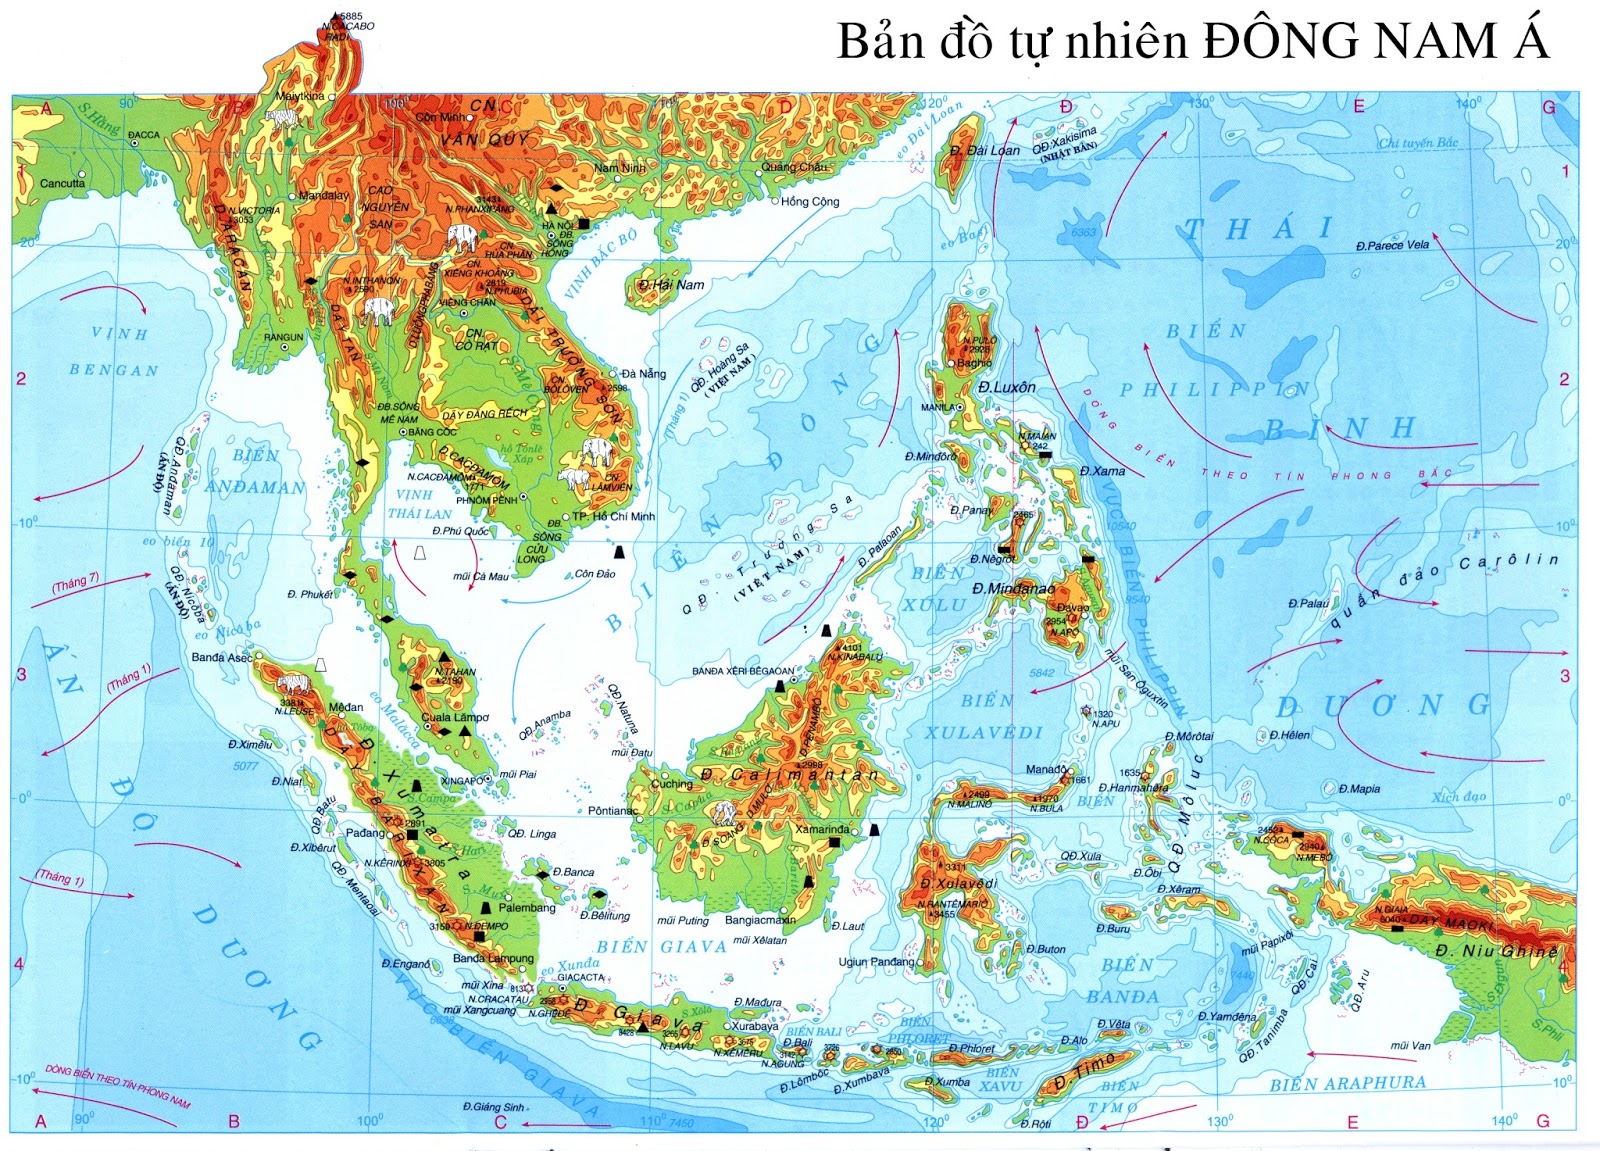 Bản đồ thế giới Đông Nam Á sẽ cho bạn một cái nhìn tổng quan về khu vực xinh đẹp và đầy sức sống này. Tìm hiểu về địa lý, lịch sử và văn hóa của các quốc gia như Việt Nam, Thái Lan, Indonesia và nhiều nơi khác.